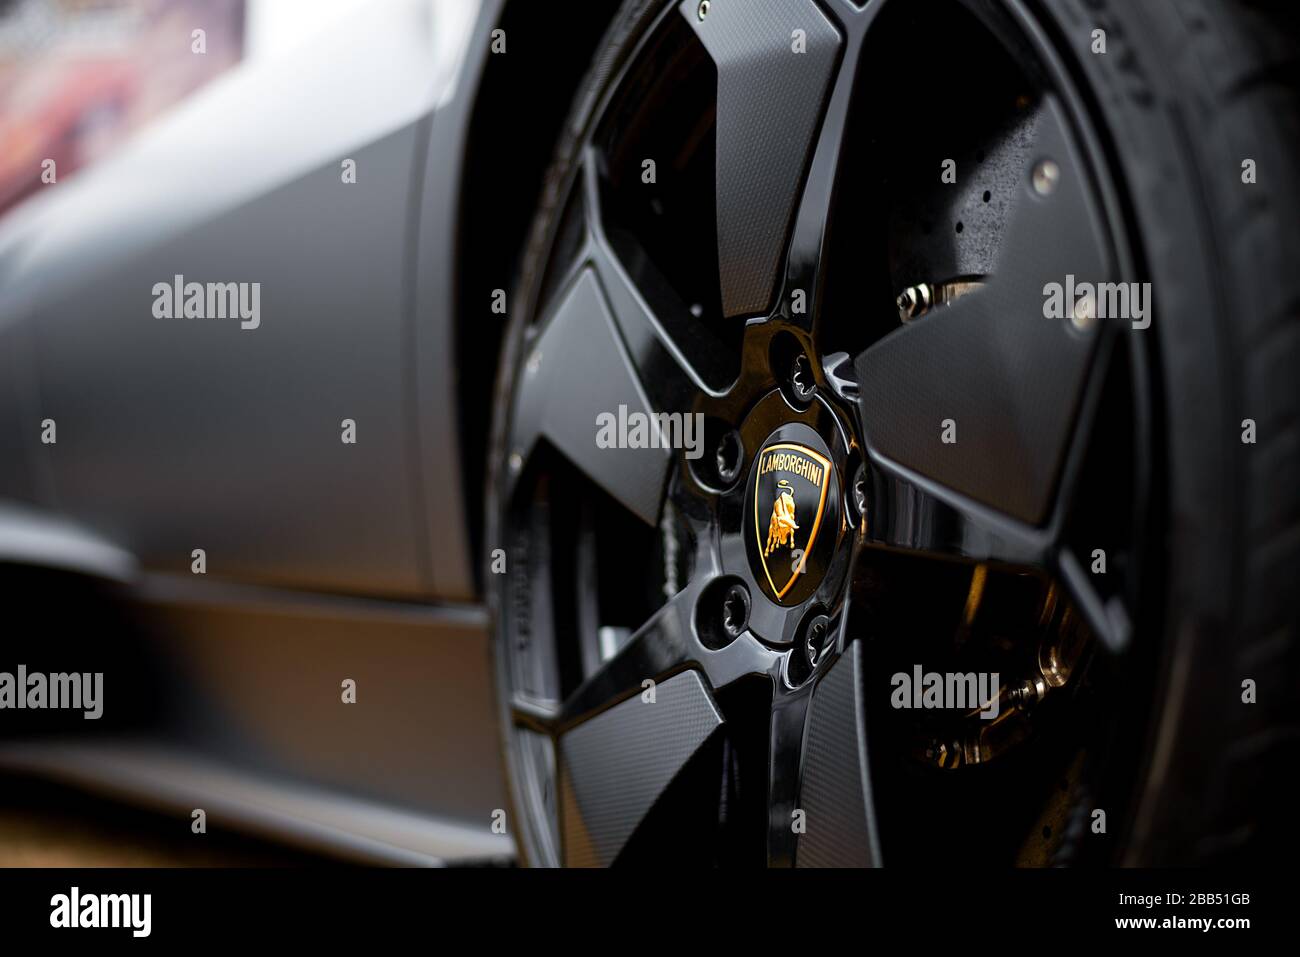 Primo piano del logo Lamborghini sull'impressionante ruota anteriore di una Lamborghini Huracan nera opaca super car. Foto Stock